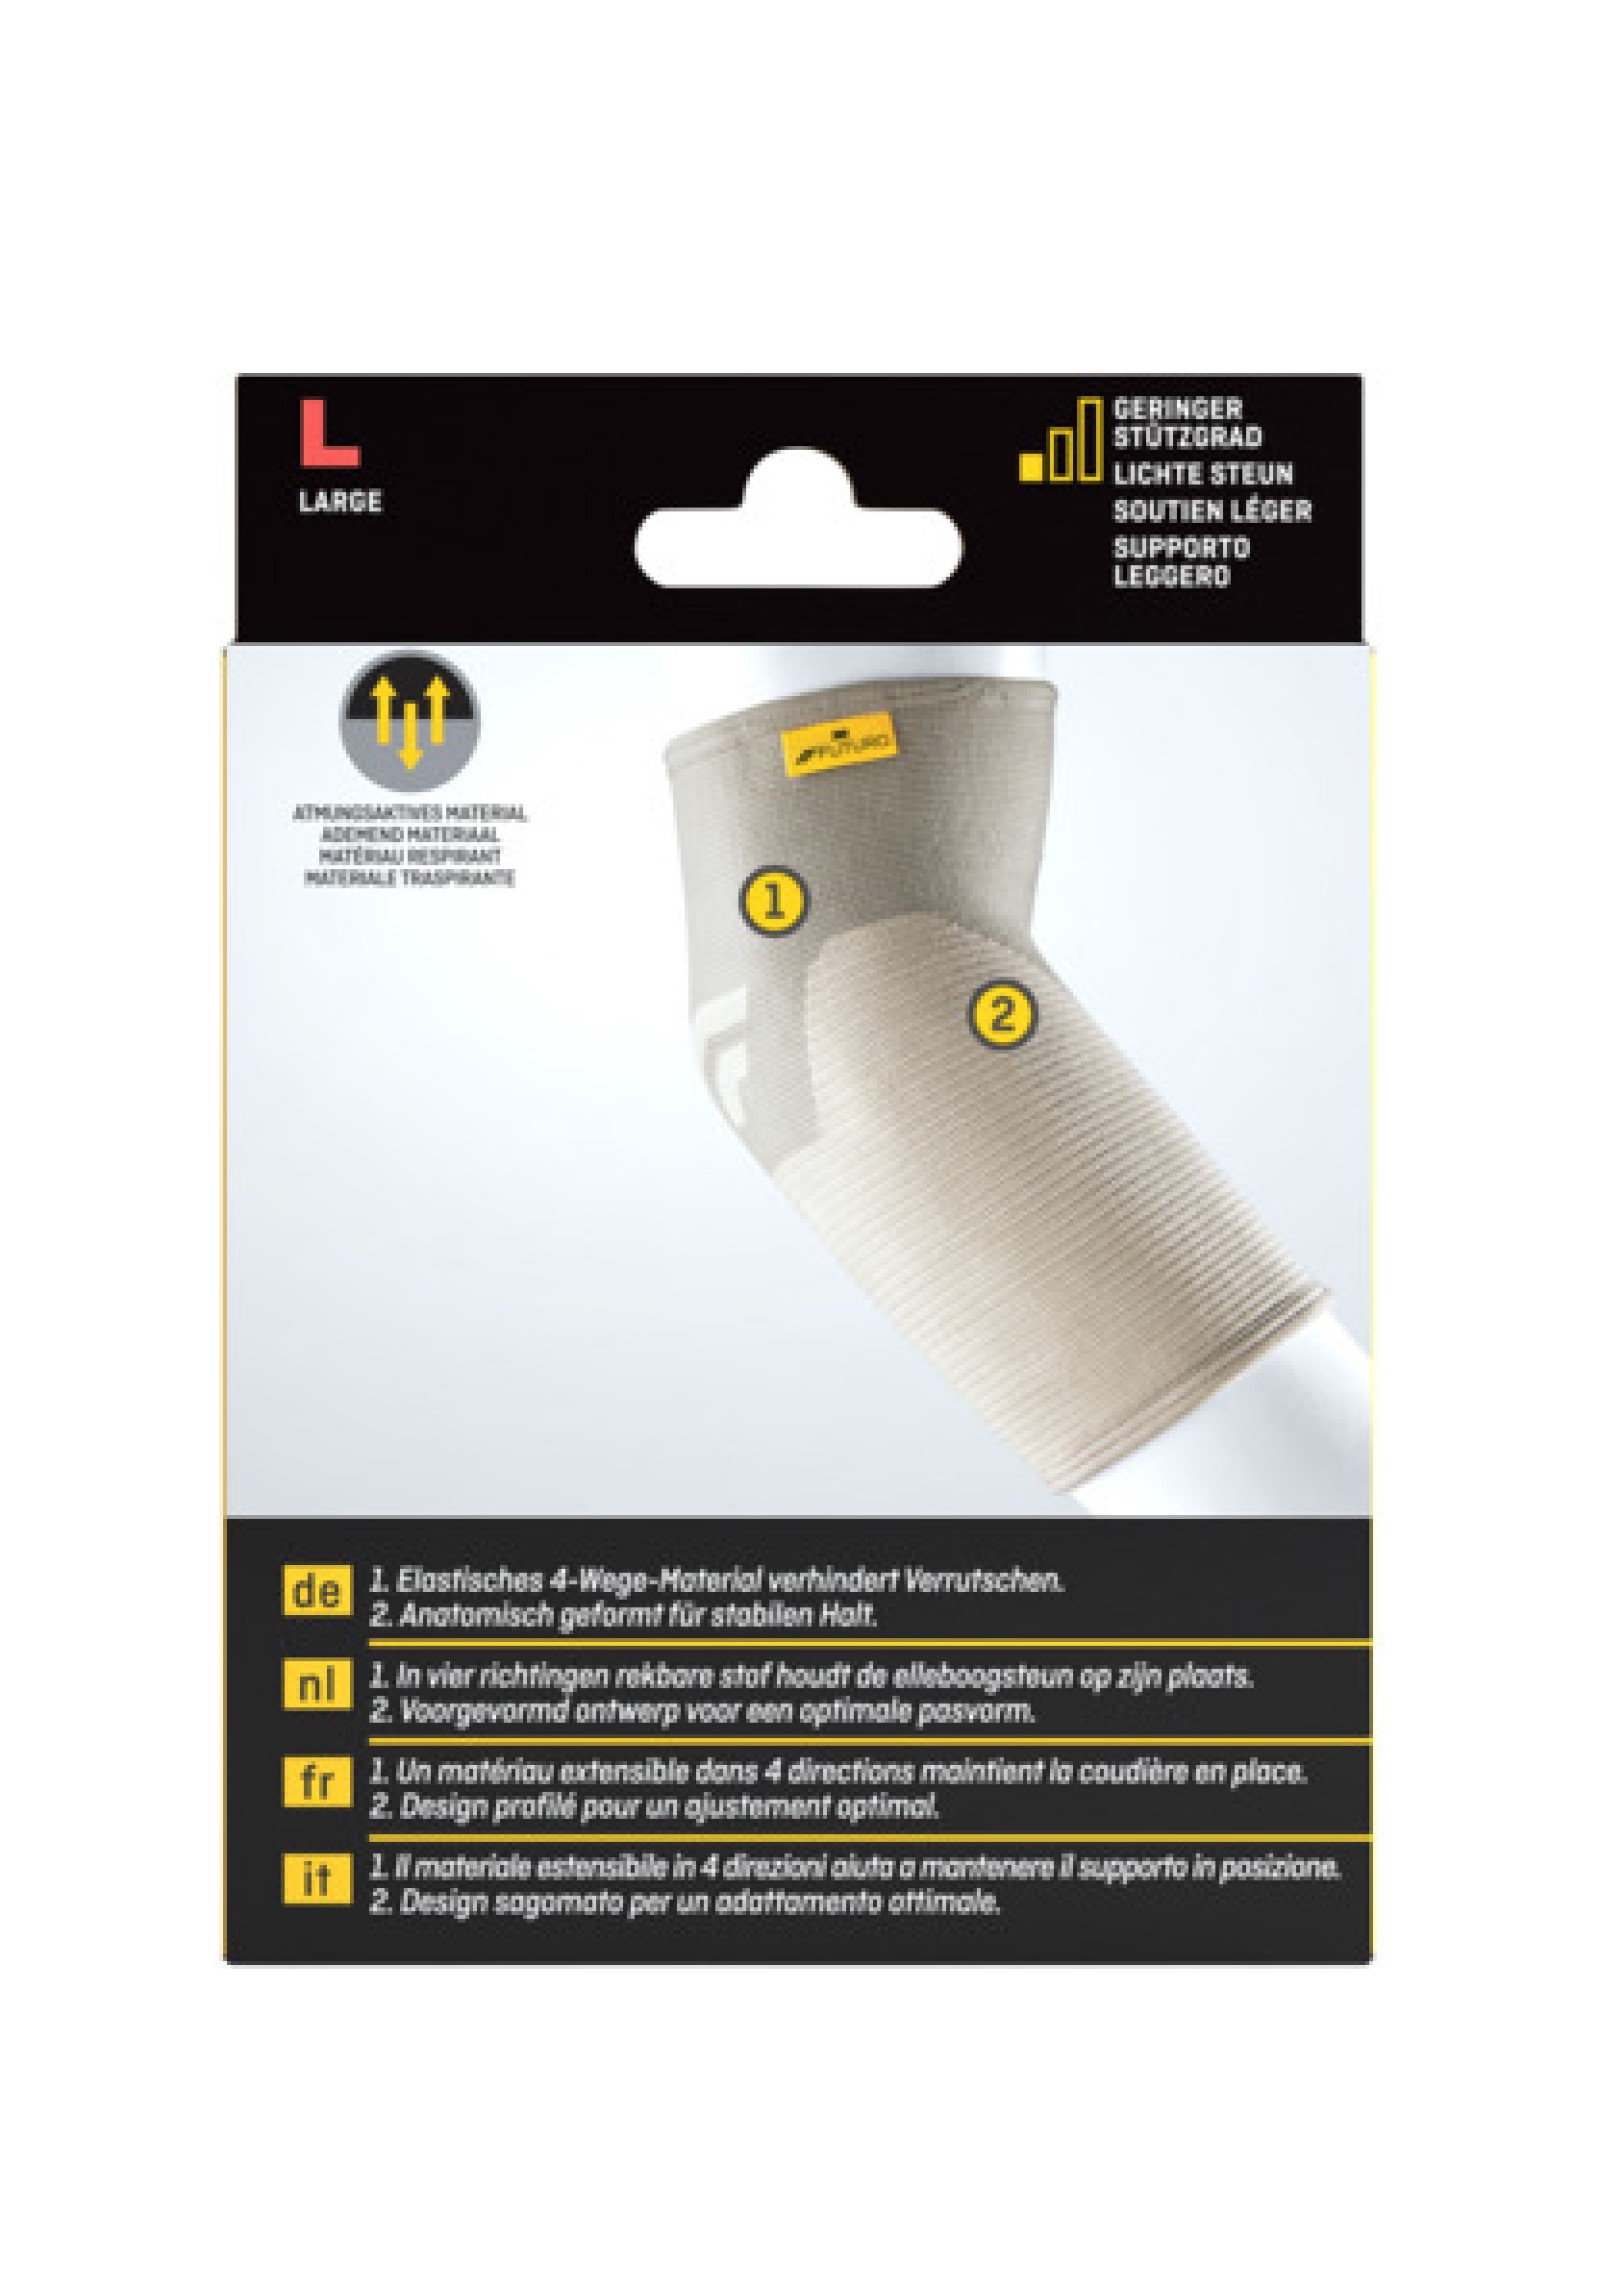 FUTURO™ Comfort Lift Ellenbogen-Bandage 76579, L (28.0 - 30.5 cm)